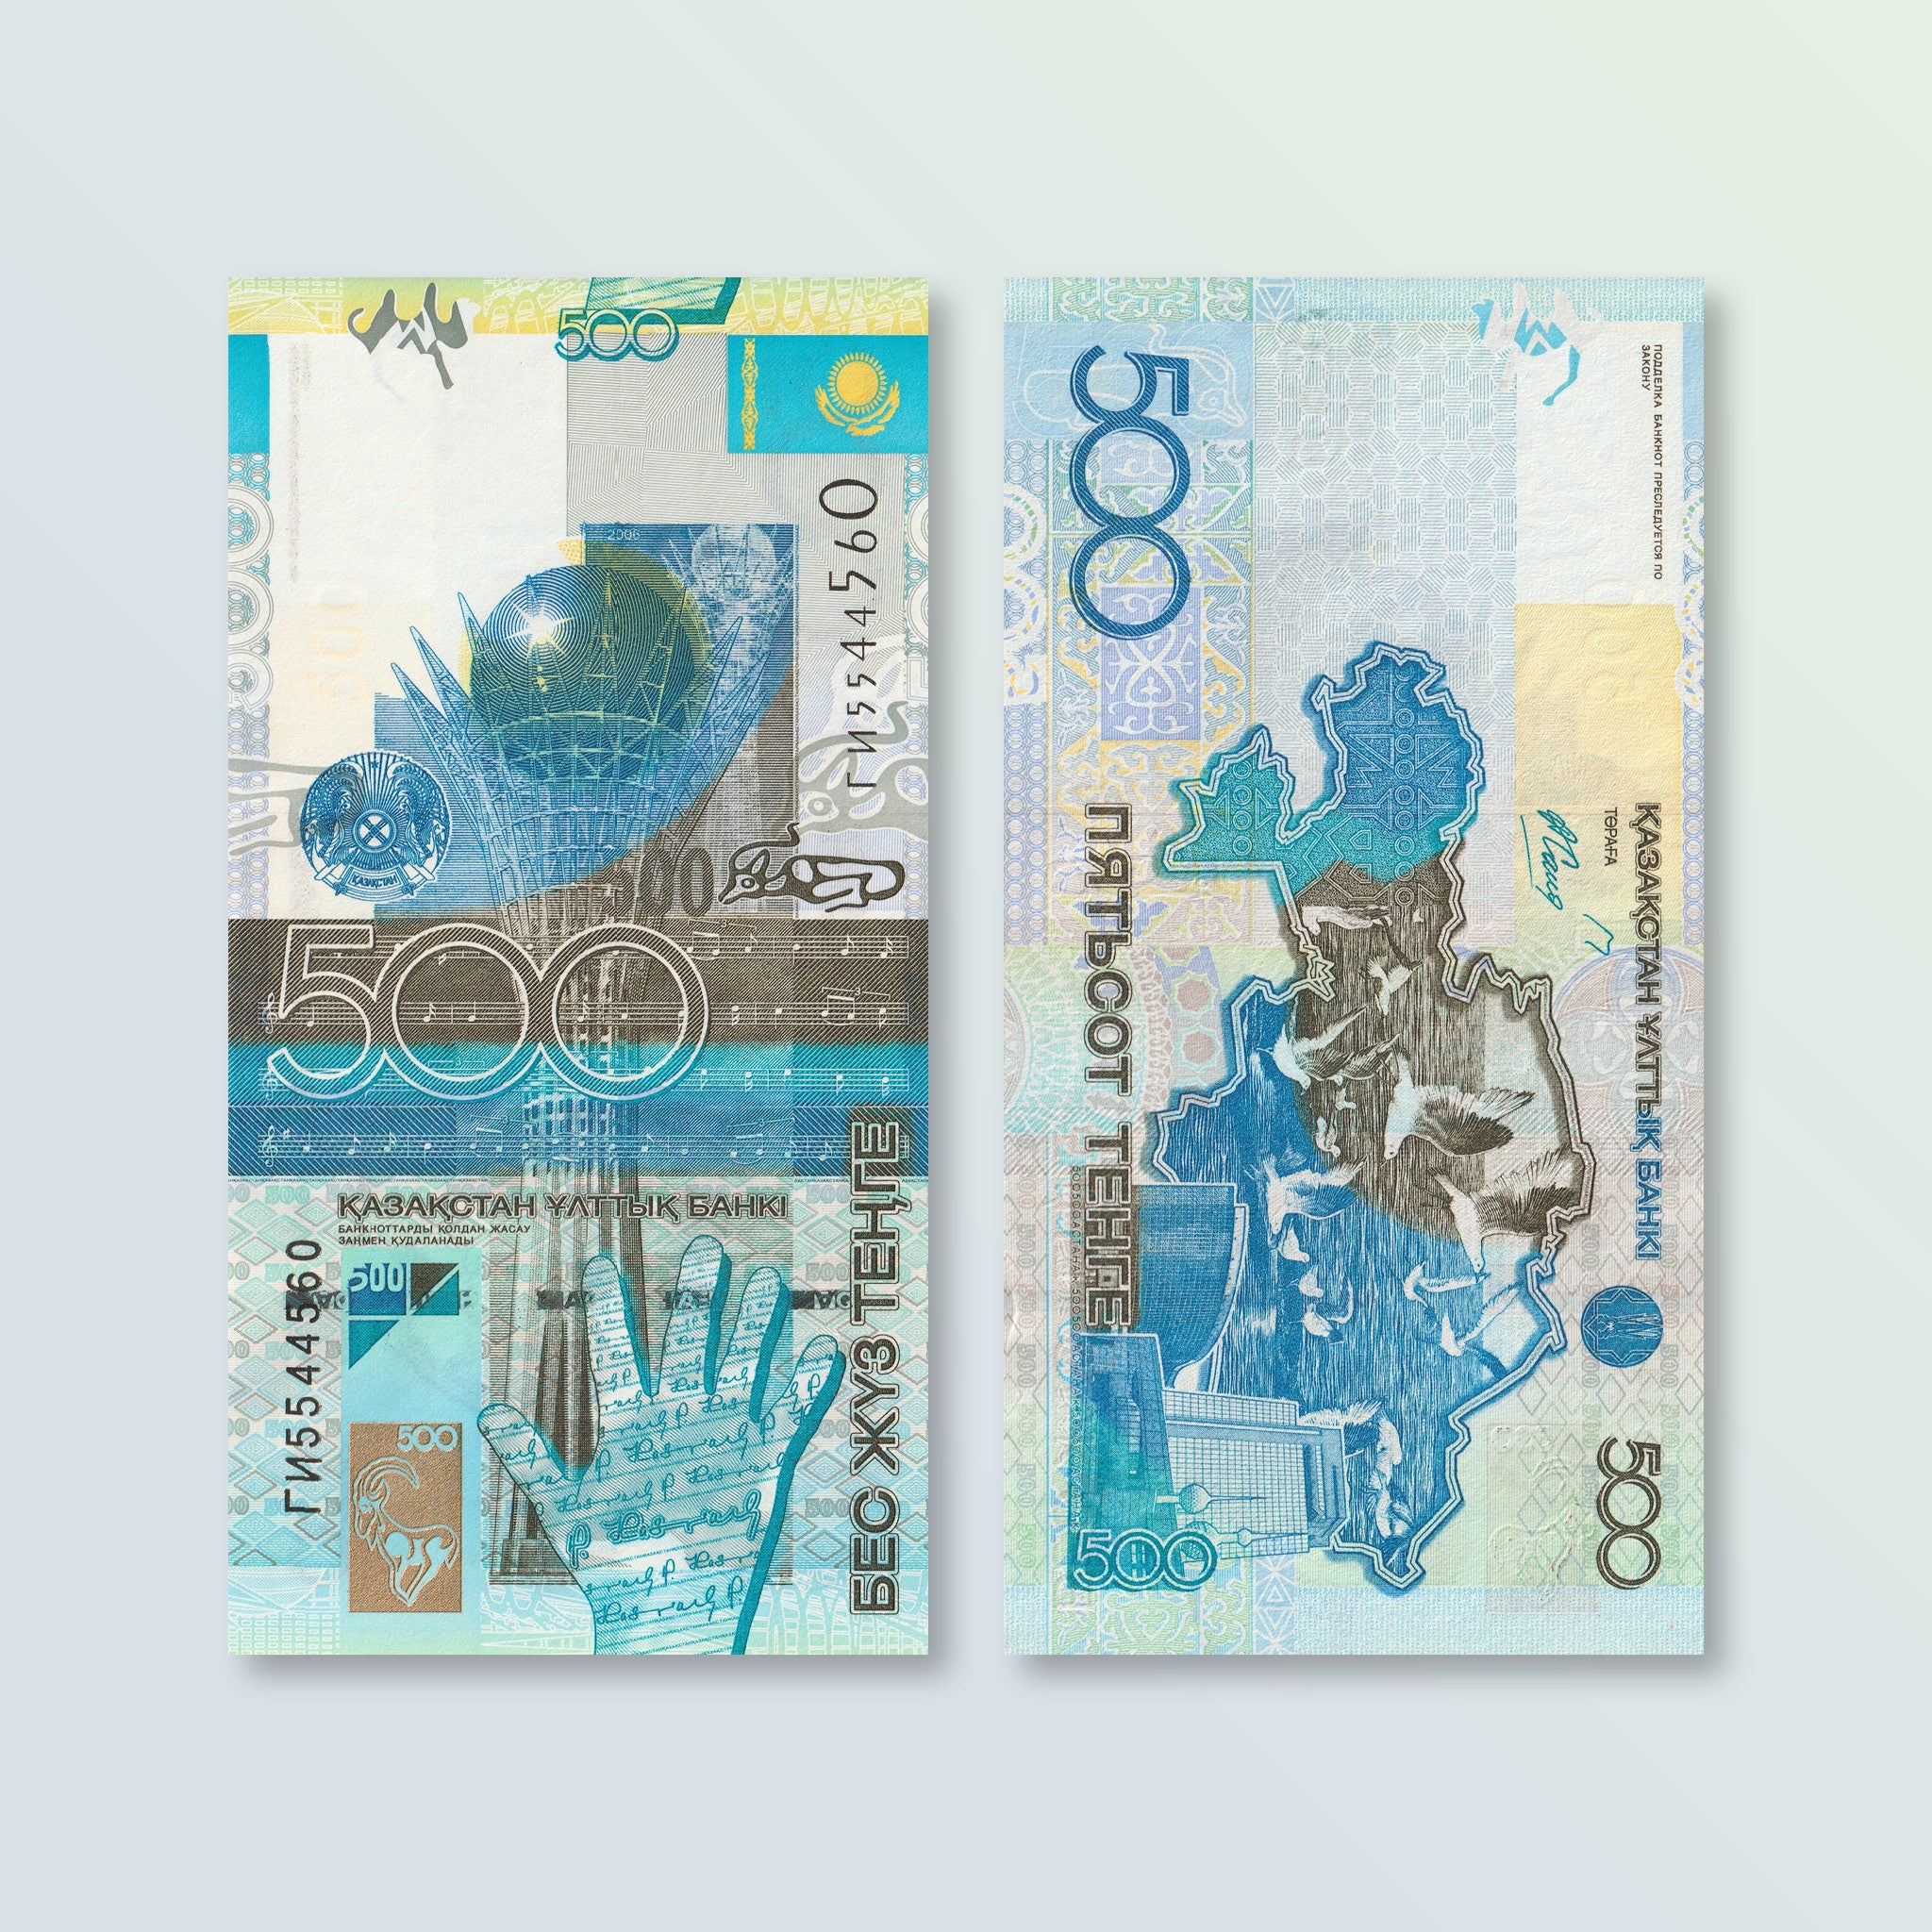 Kazakhstan 500 Tenge, 2006, B129a, P29a, UNC - Robert's World Money - World Banknotes